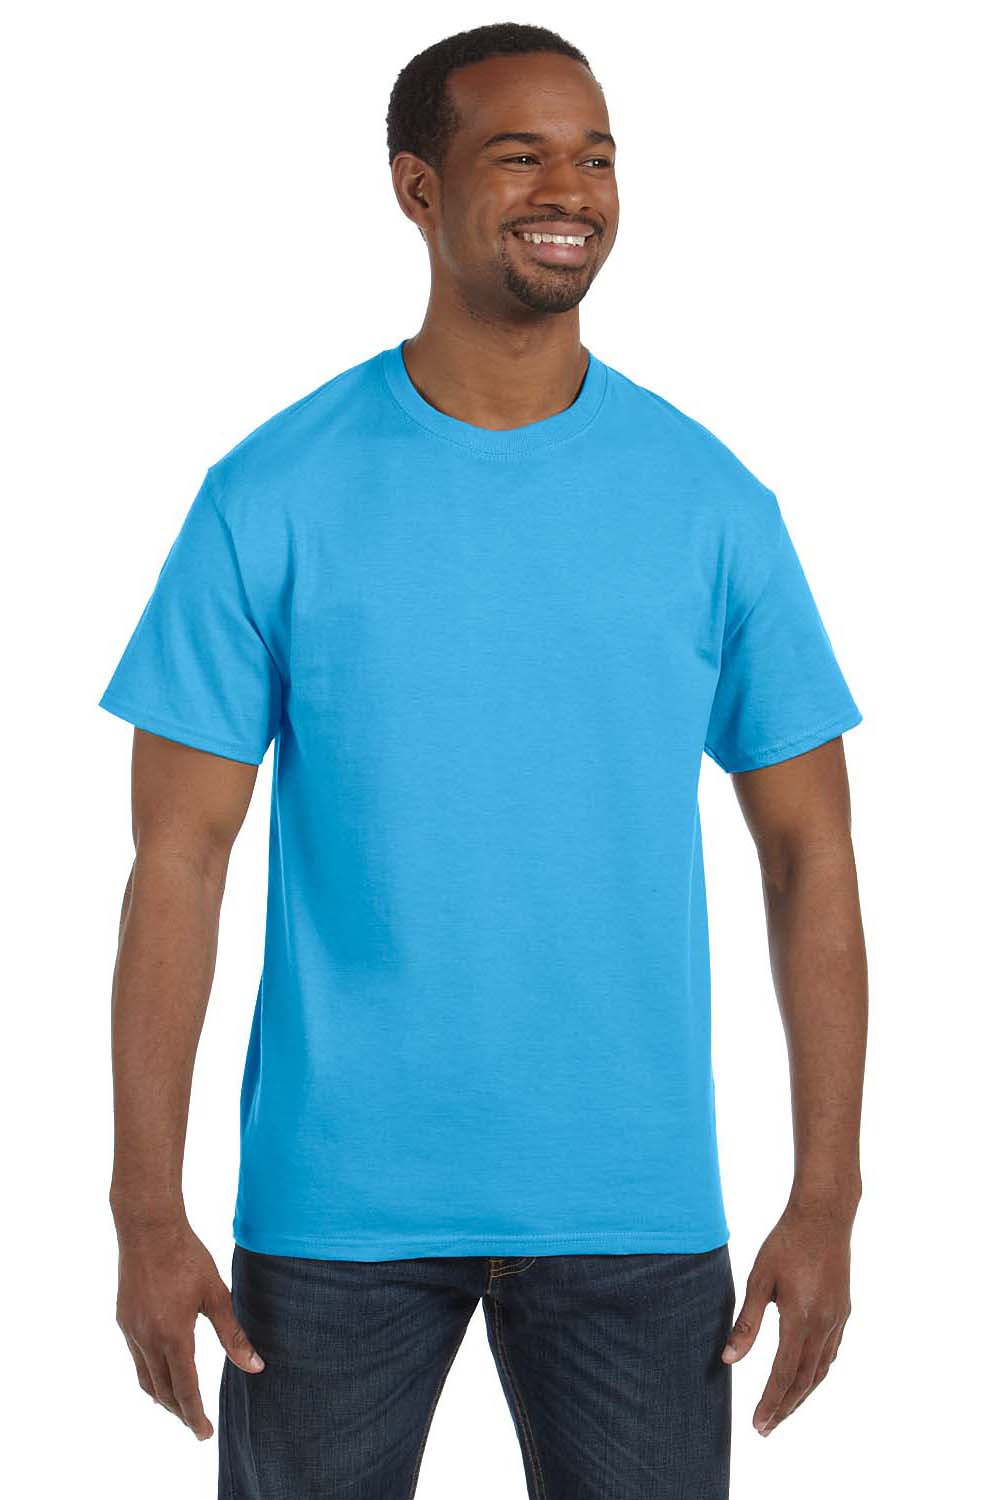 Hanes 5250T Mens ComfortSoft Short Sleeve Crewneck T-Shirt Aquatic Blue Front